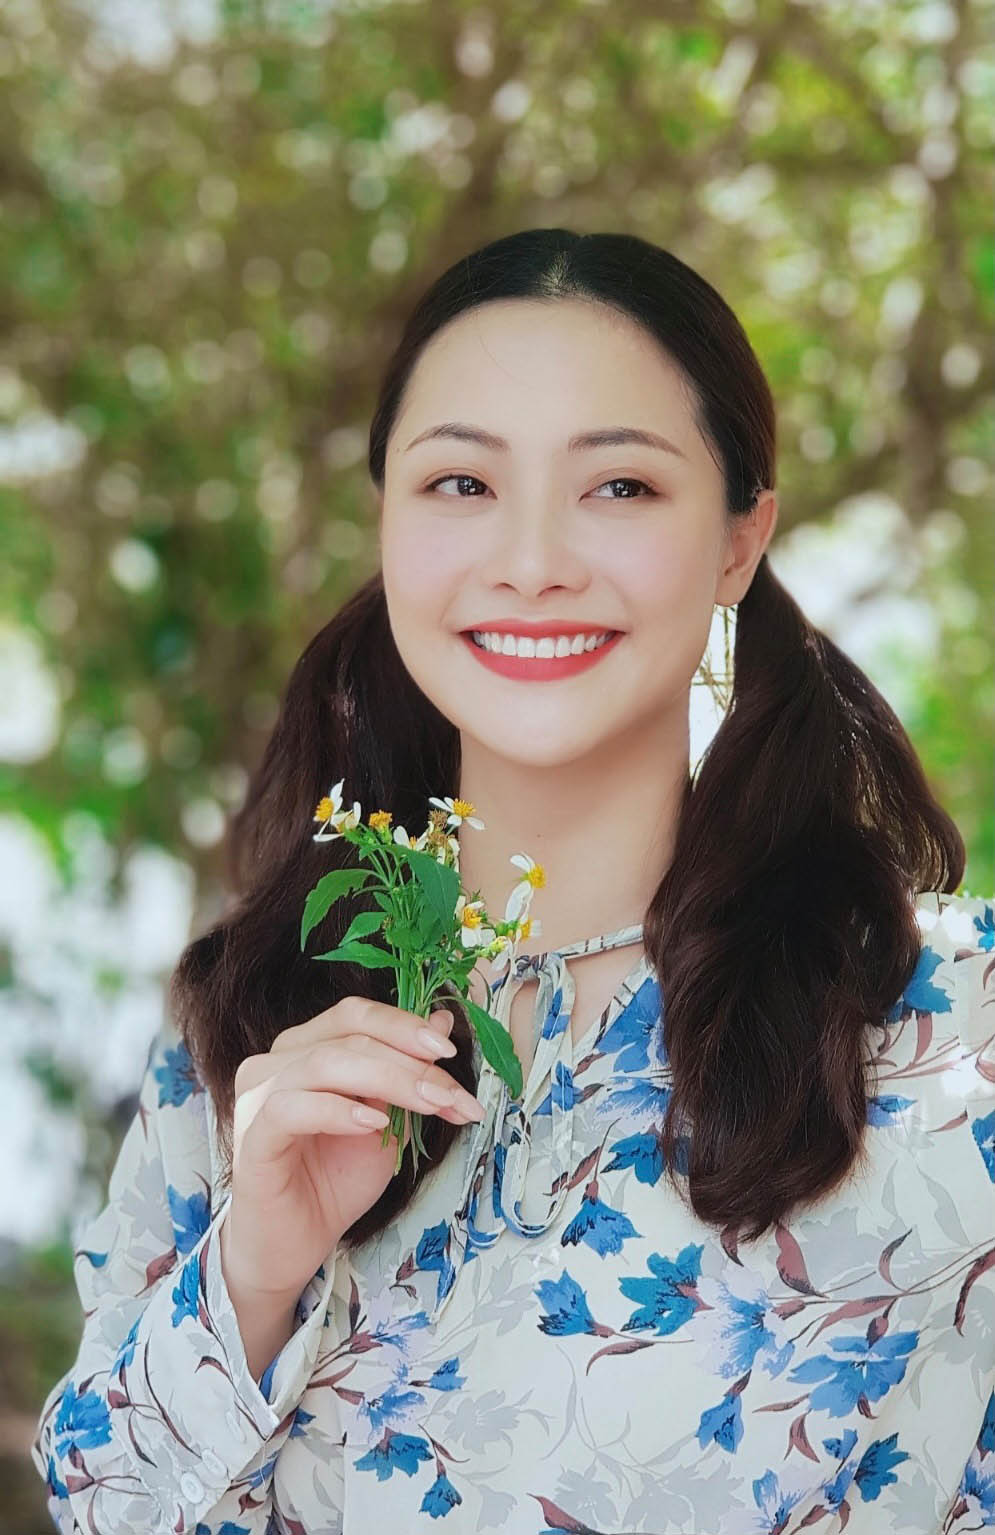 Thời trang đậm chất "gái quê" của Huyền Thạch trong bộ phim "Mùa hoa tìm lại". Cô đang là cái tên thu hút nhiều sự chú ý khi tham gia vào nhiều dự án phim truyền hình hot gần đây.